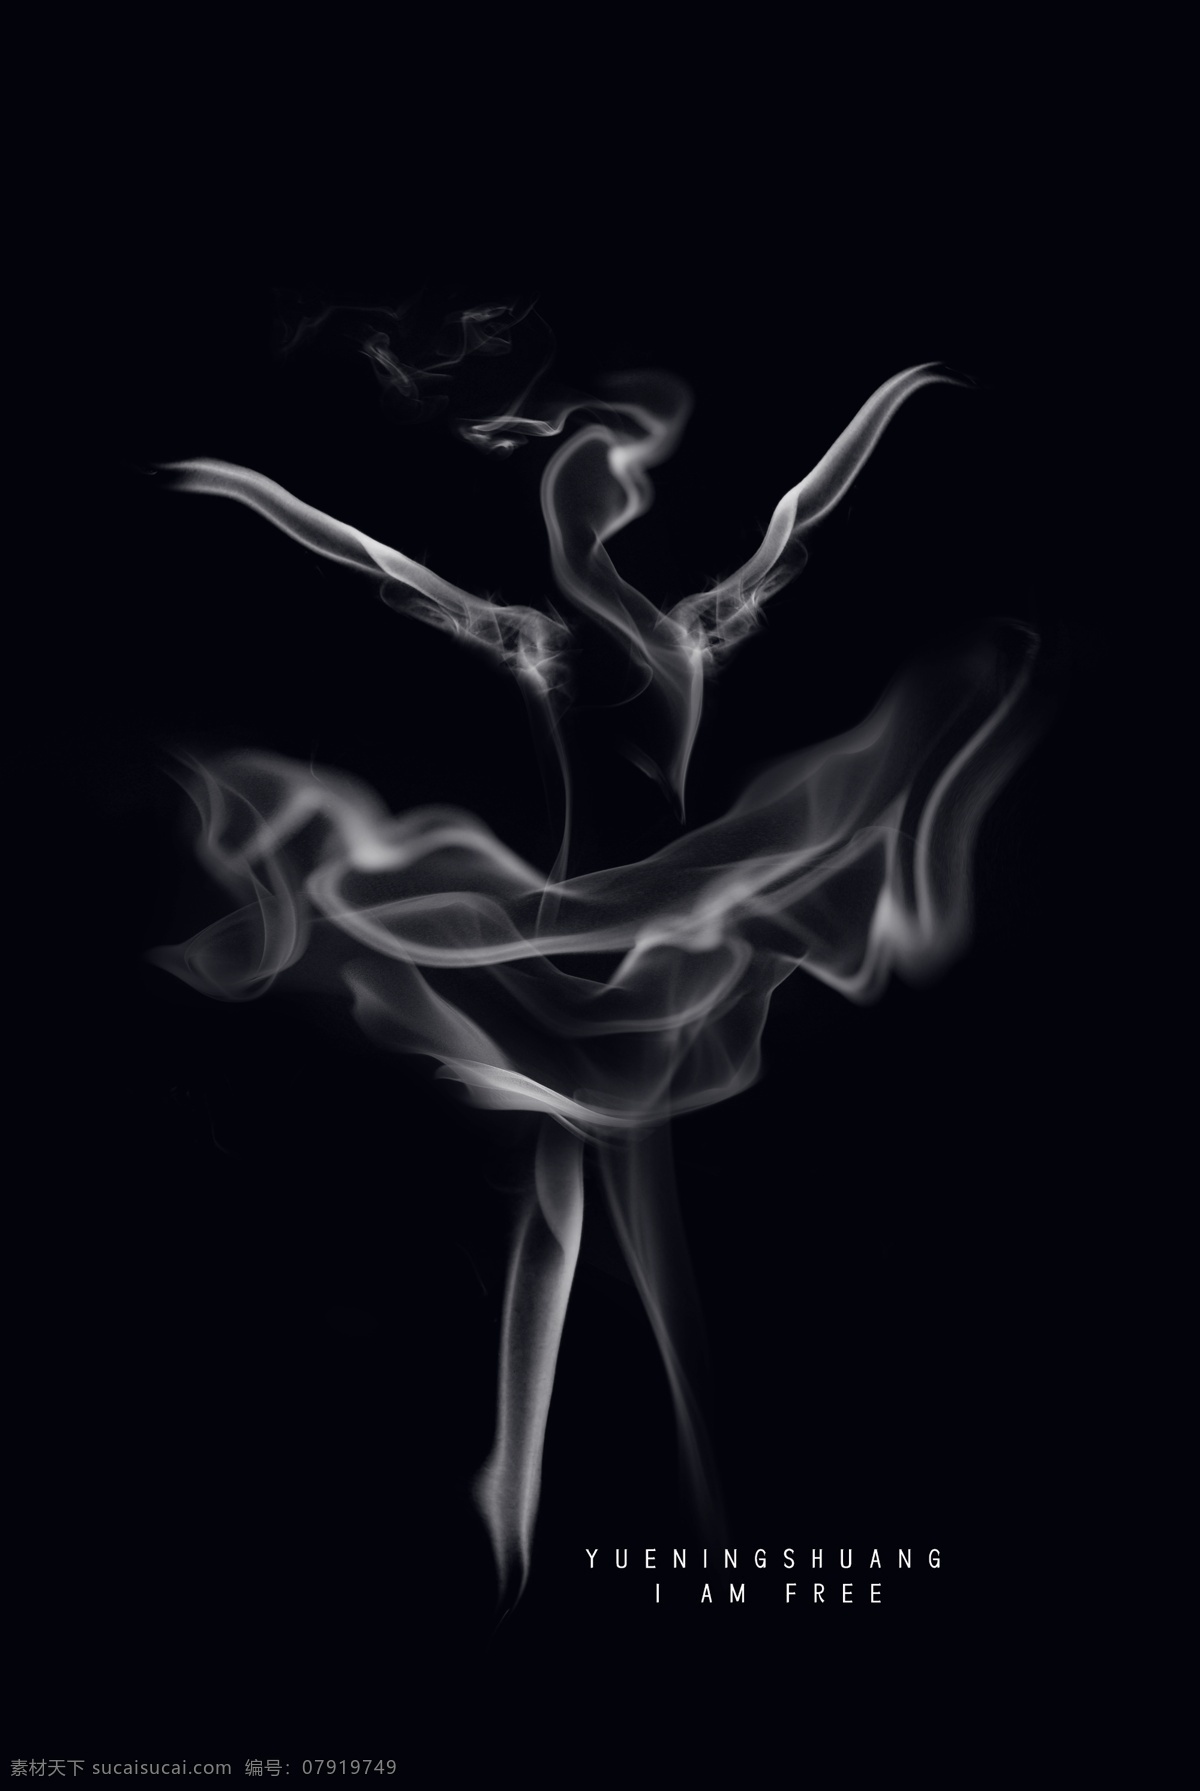 烟雾舞蹈人 烟雾 舞蹈 女性 优雅 个性 创意